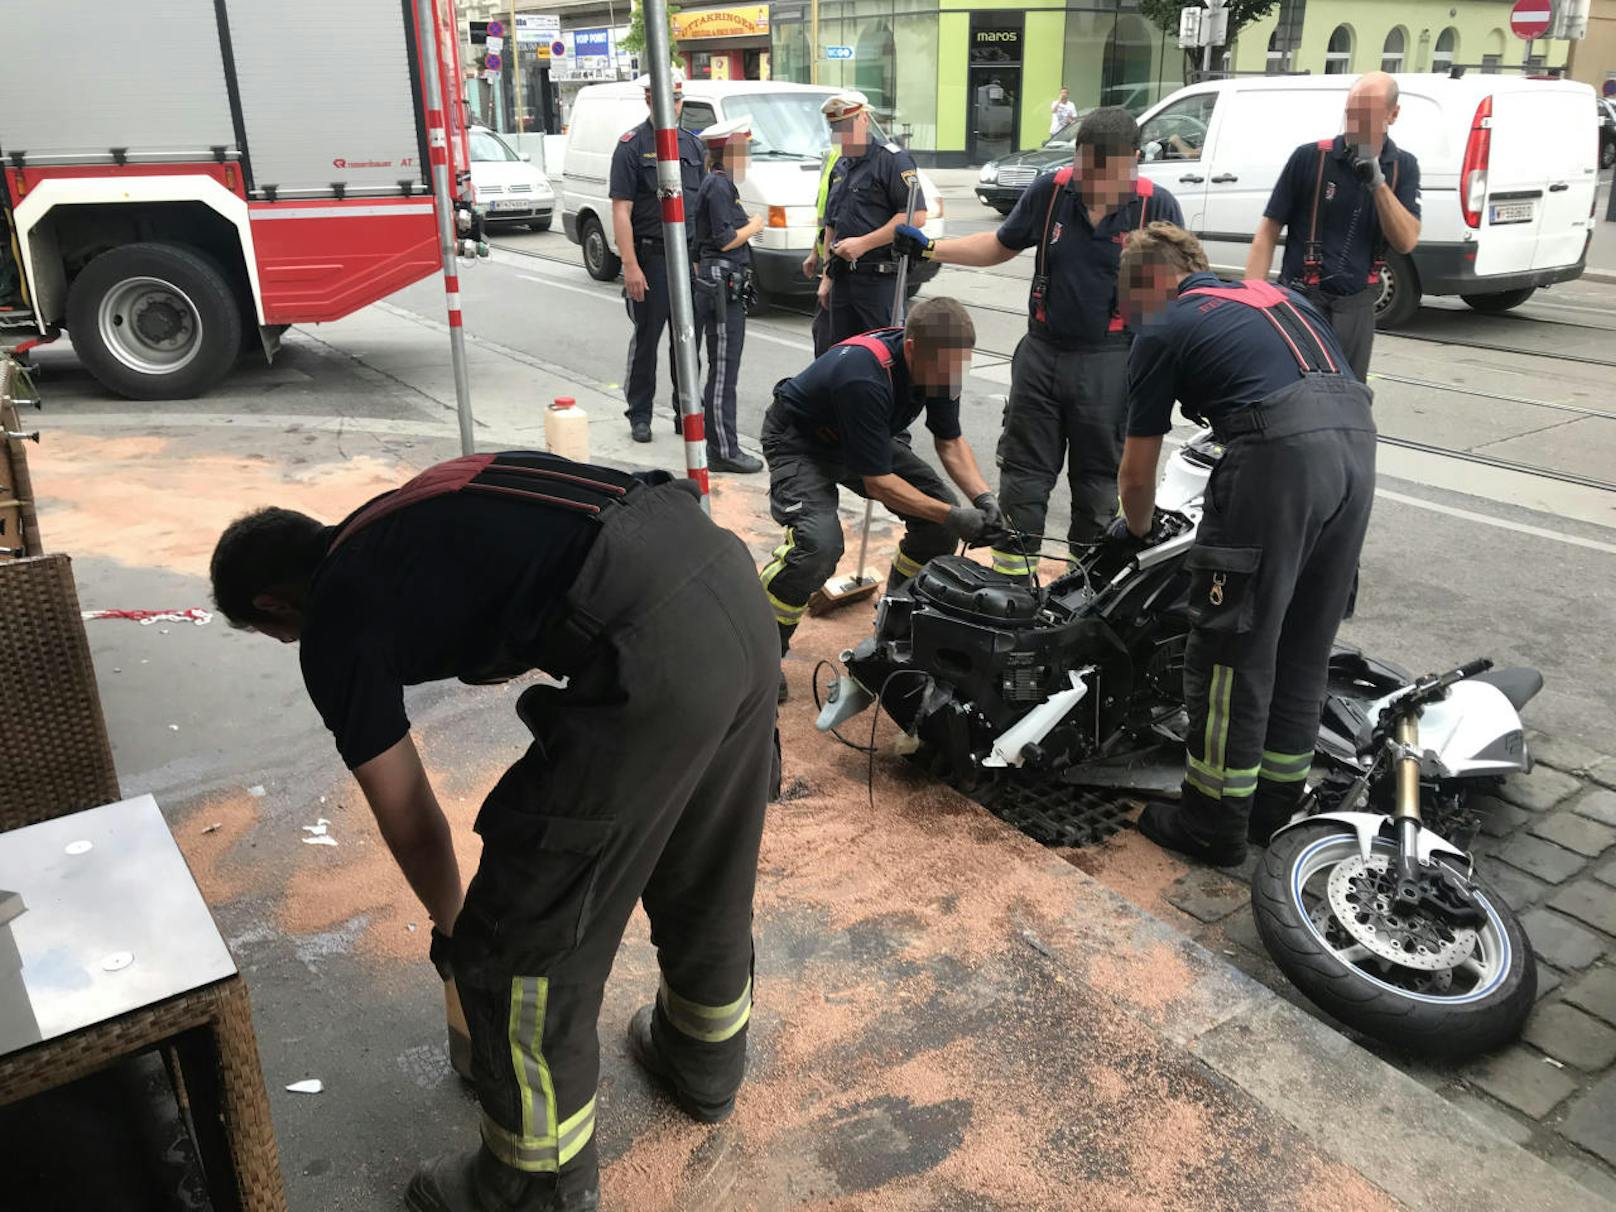 Am Dienstagnachmittag kam es zu einem schweren Verkehrsunfall auf der Ottakringer Straße. Ein junger Biker kämpft um sein Leben.